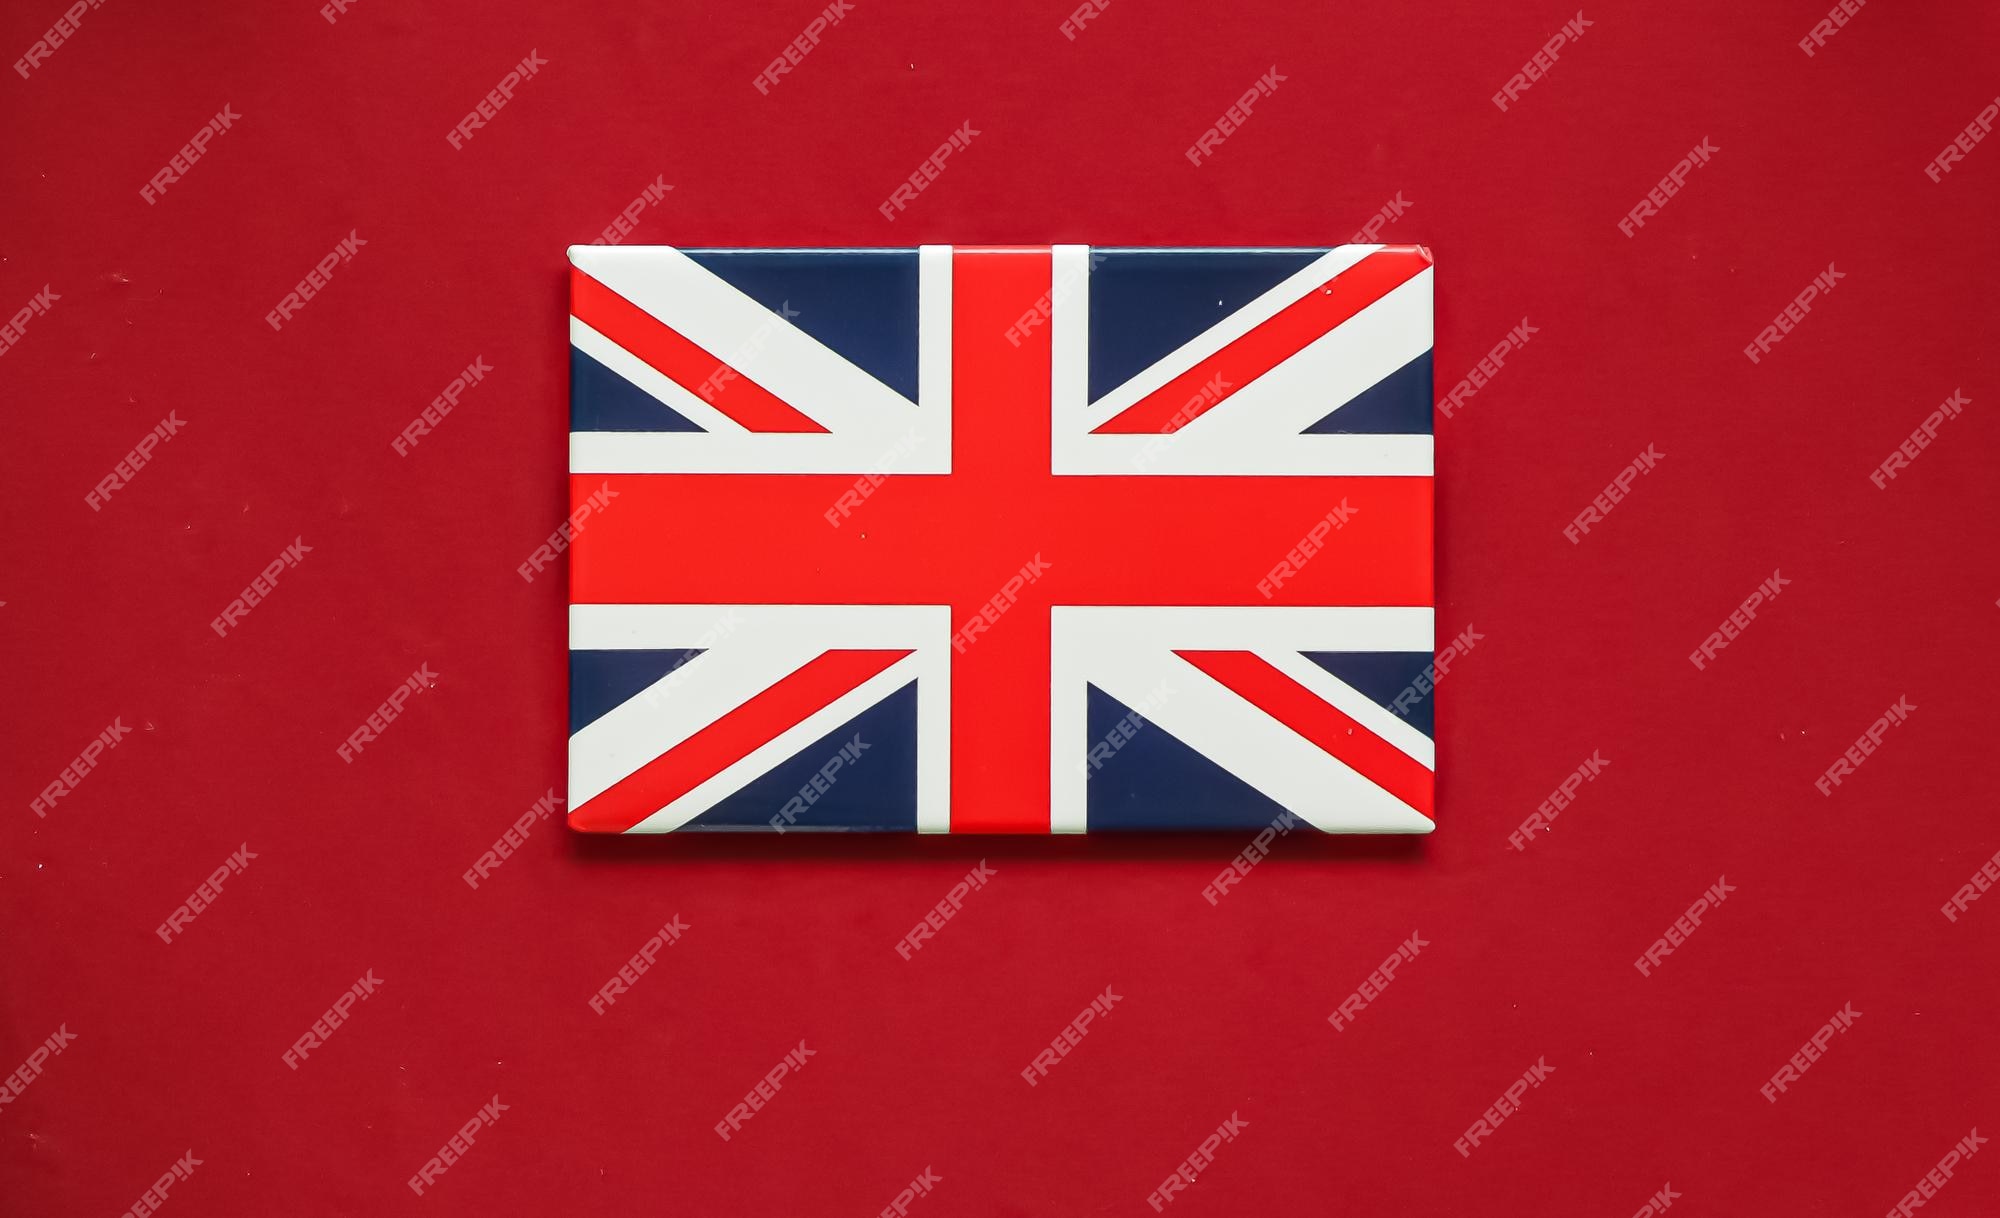 Cùng ngắm nhìn hình ảnh lá cờ đẹp tuyệt vời của Vương quốc Anh. Lá cờ này là biểu tượng của một đất nước phát triển với nền kinh tế mạnh mẽ và lịch sử lâu đời. Hãy khám phá nét đẹp quyến rũ của lá cờ đầy ý nghĩa này.